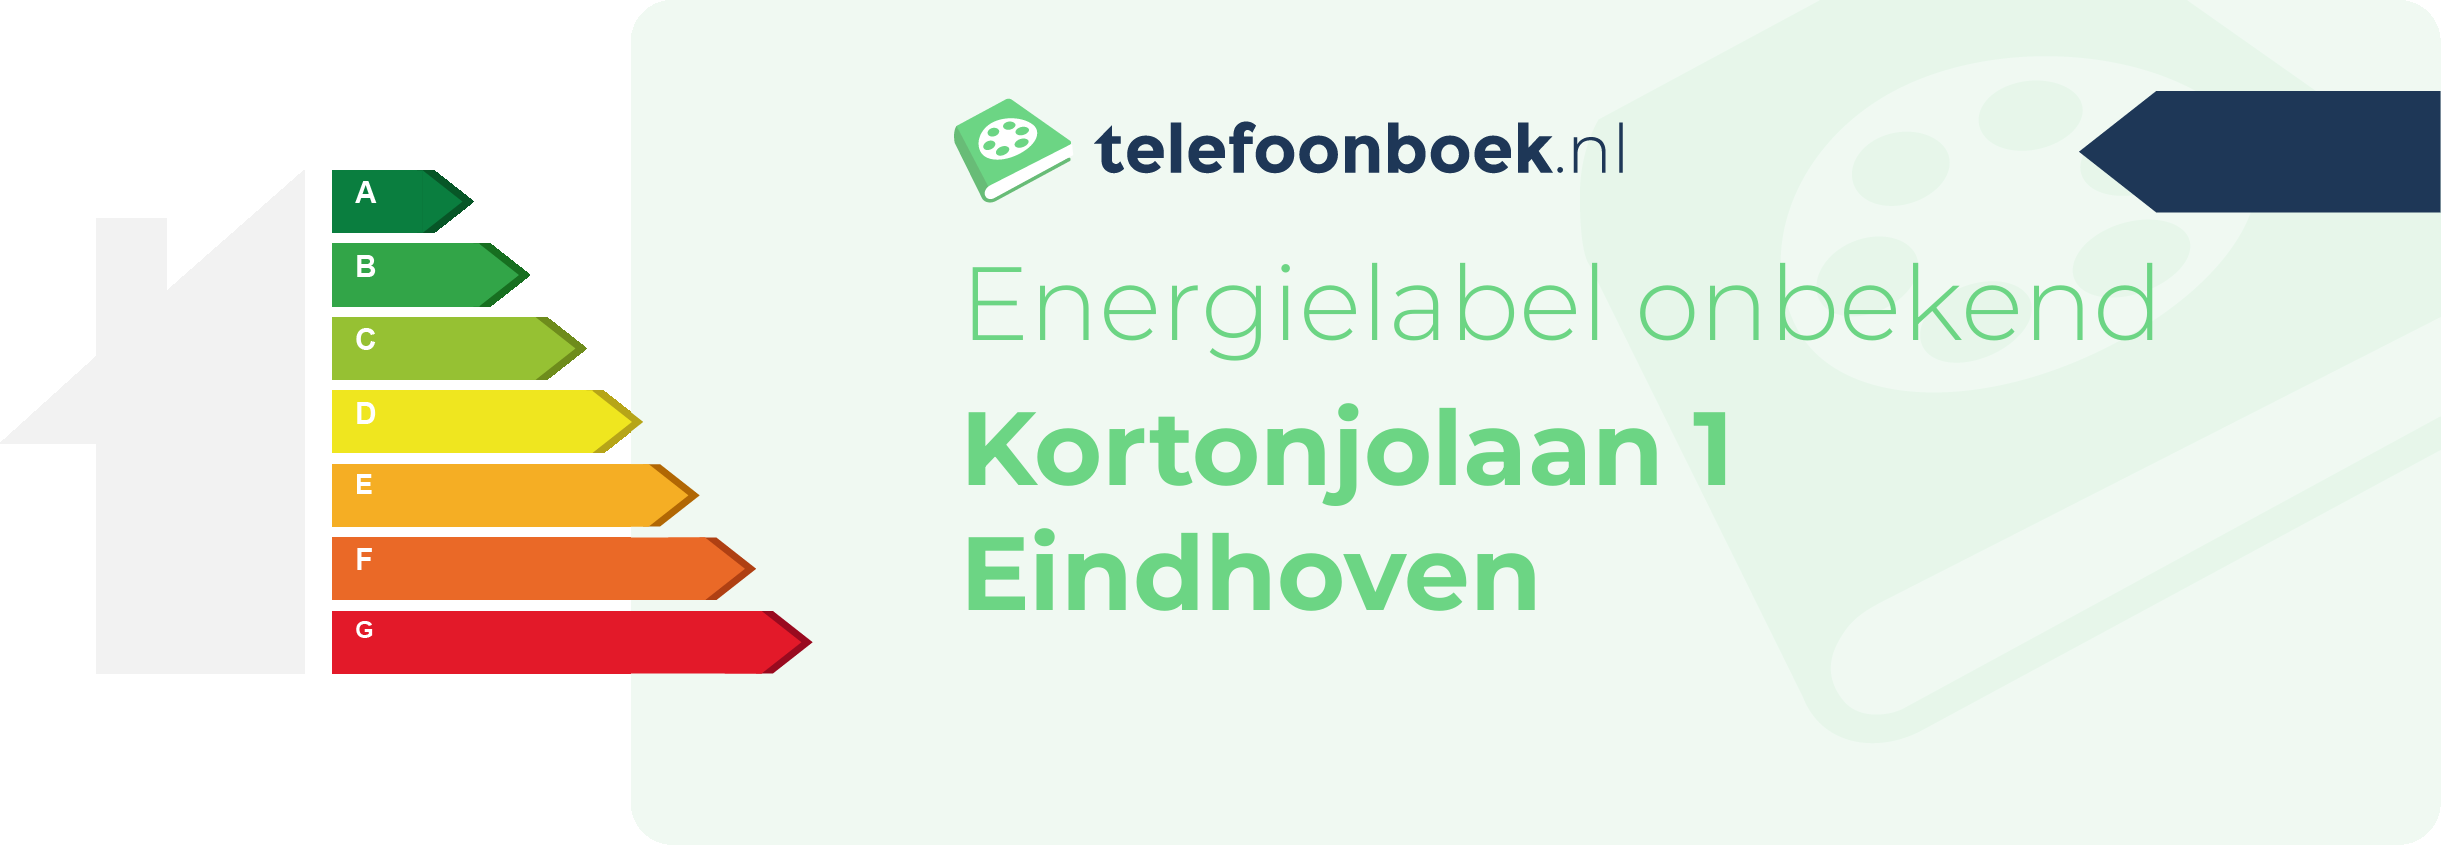 Energielabel Kortonjolaan 1 Eindhoven